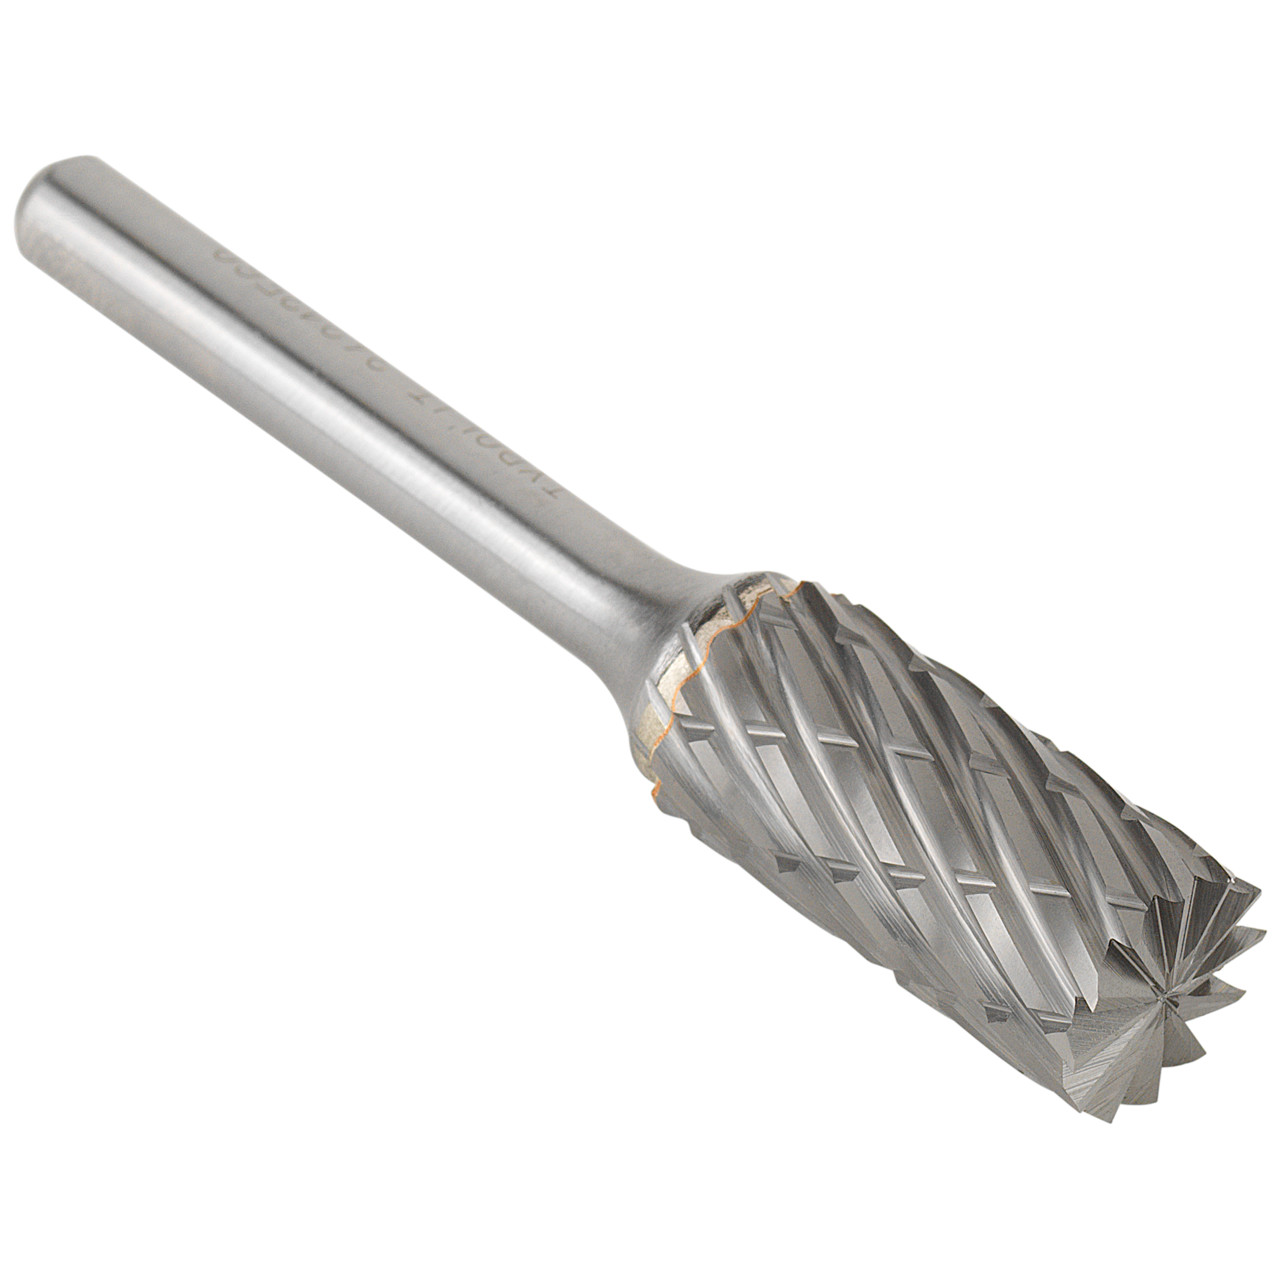 Tyrolit Hardmetalen frees DxT-SxL 6x18-6x50 Voor staal, vorm: 52ZYAS - cilinder met vlakvertanding, Art. 34213557